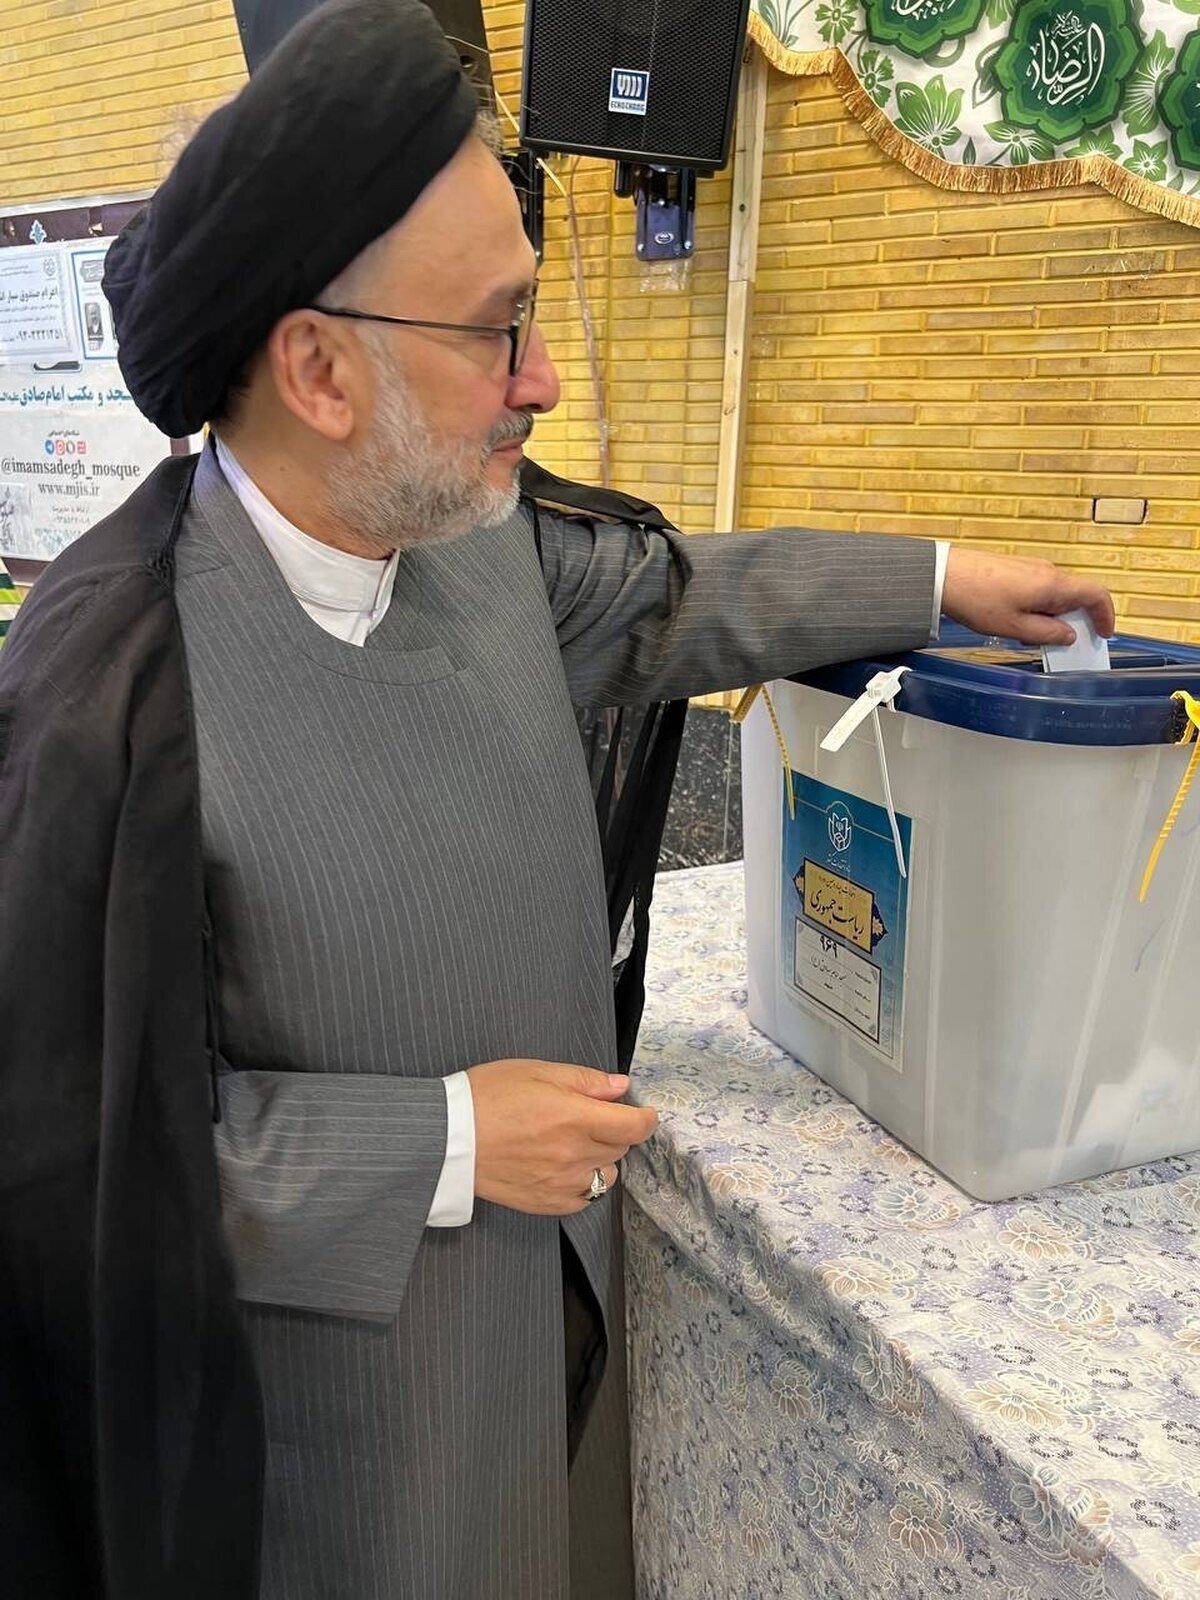 عکس | پیام جالب محمدعلی ابطحی بعد از رای دادن!